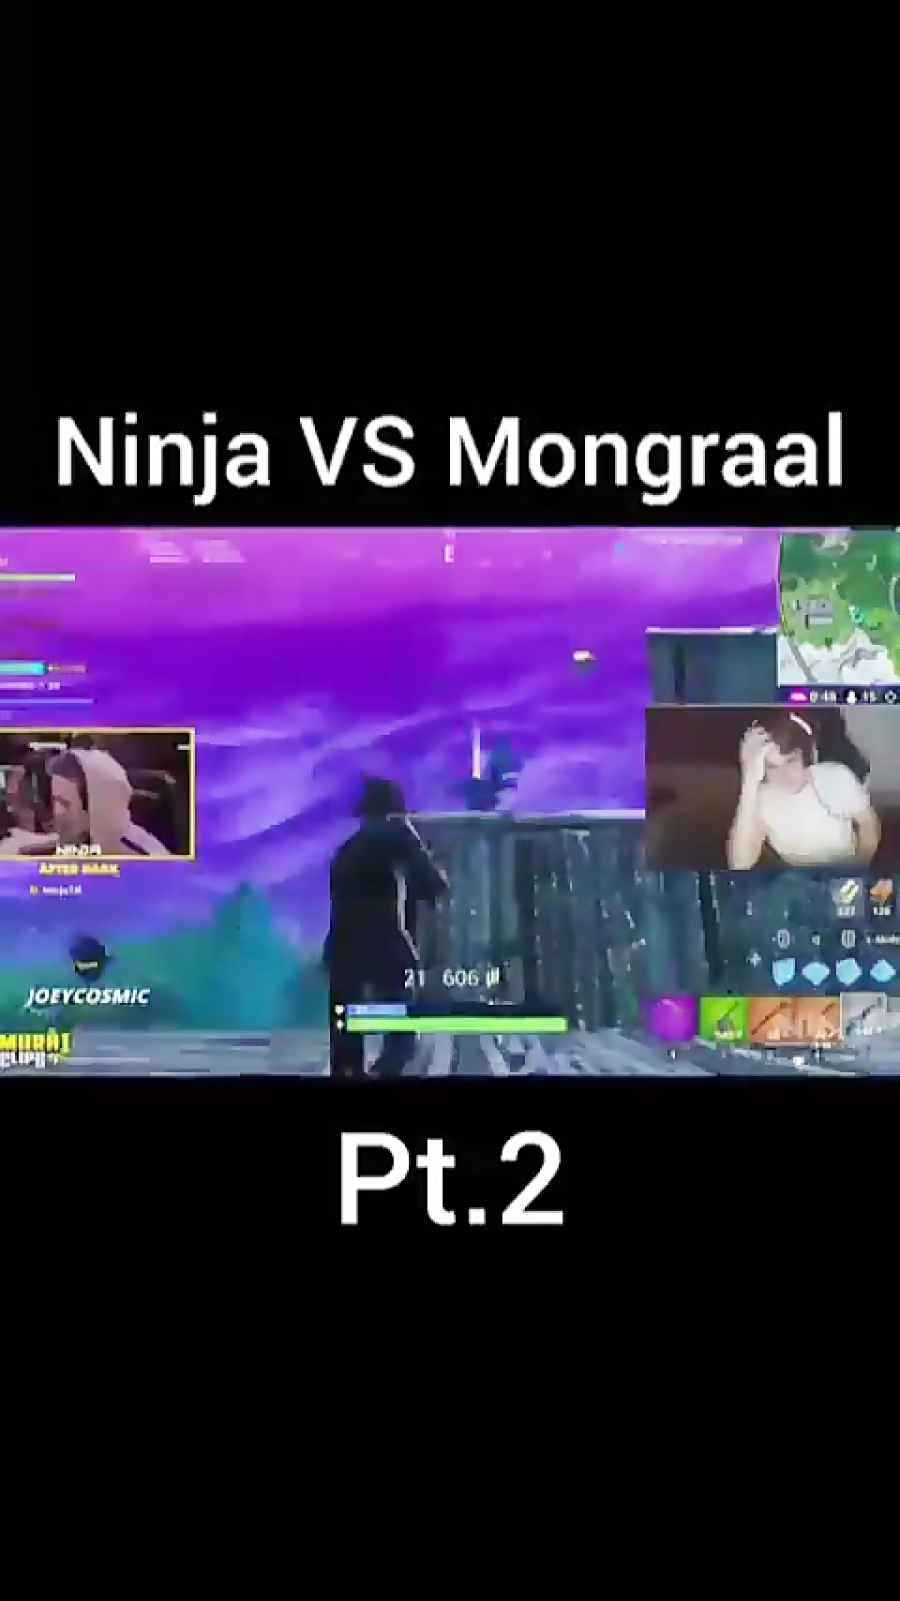 نینجا مقابل مونگرال / mongraal vs ninja /فایت نینجا و مونگرال